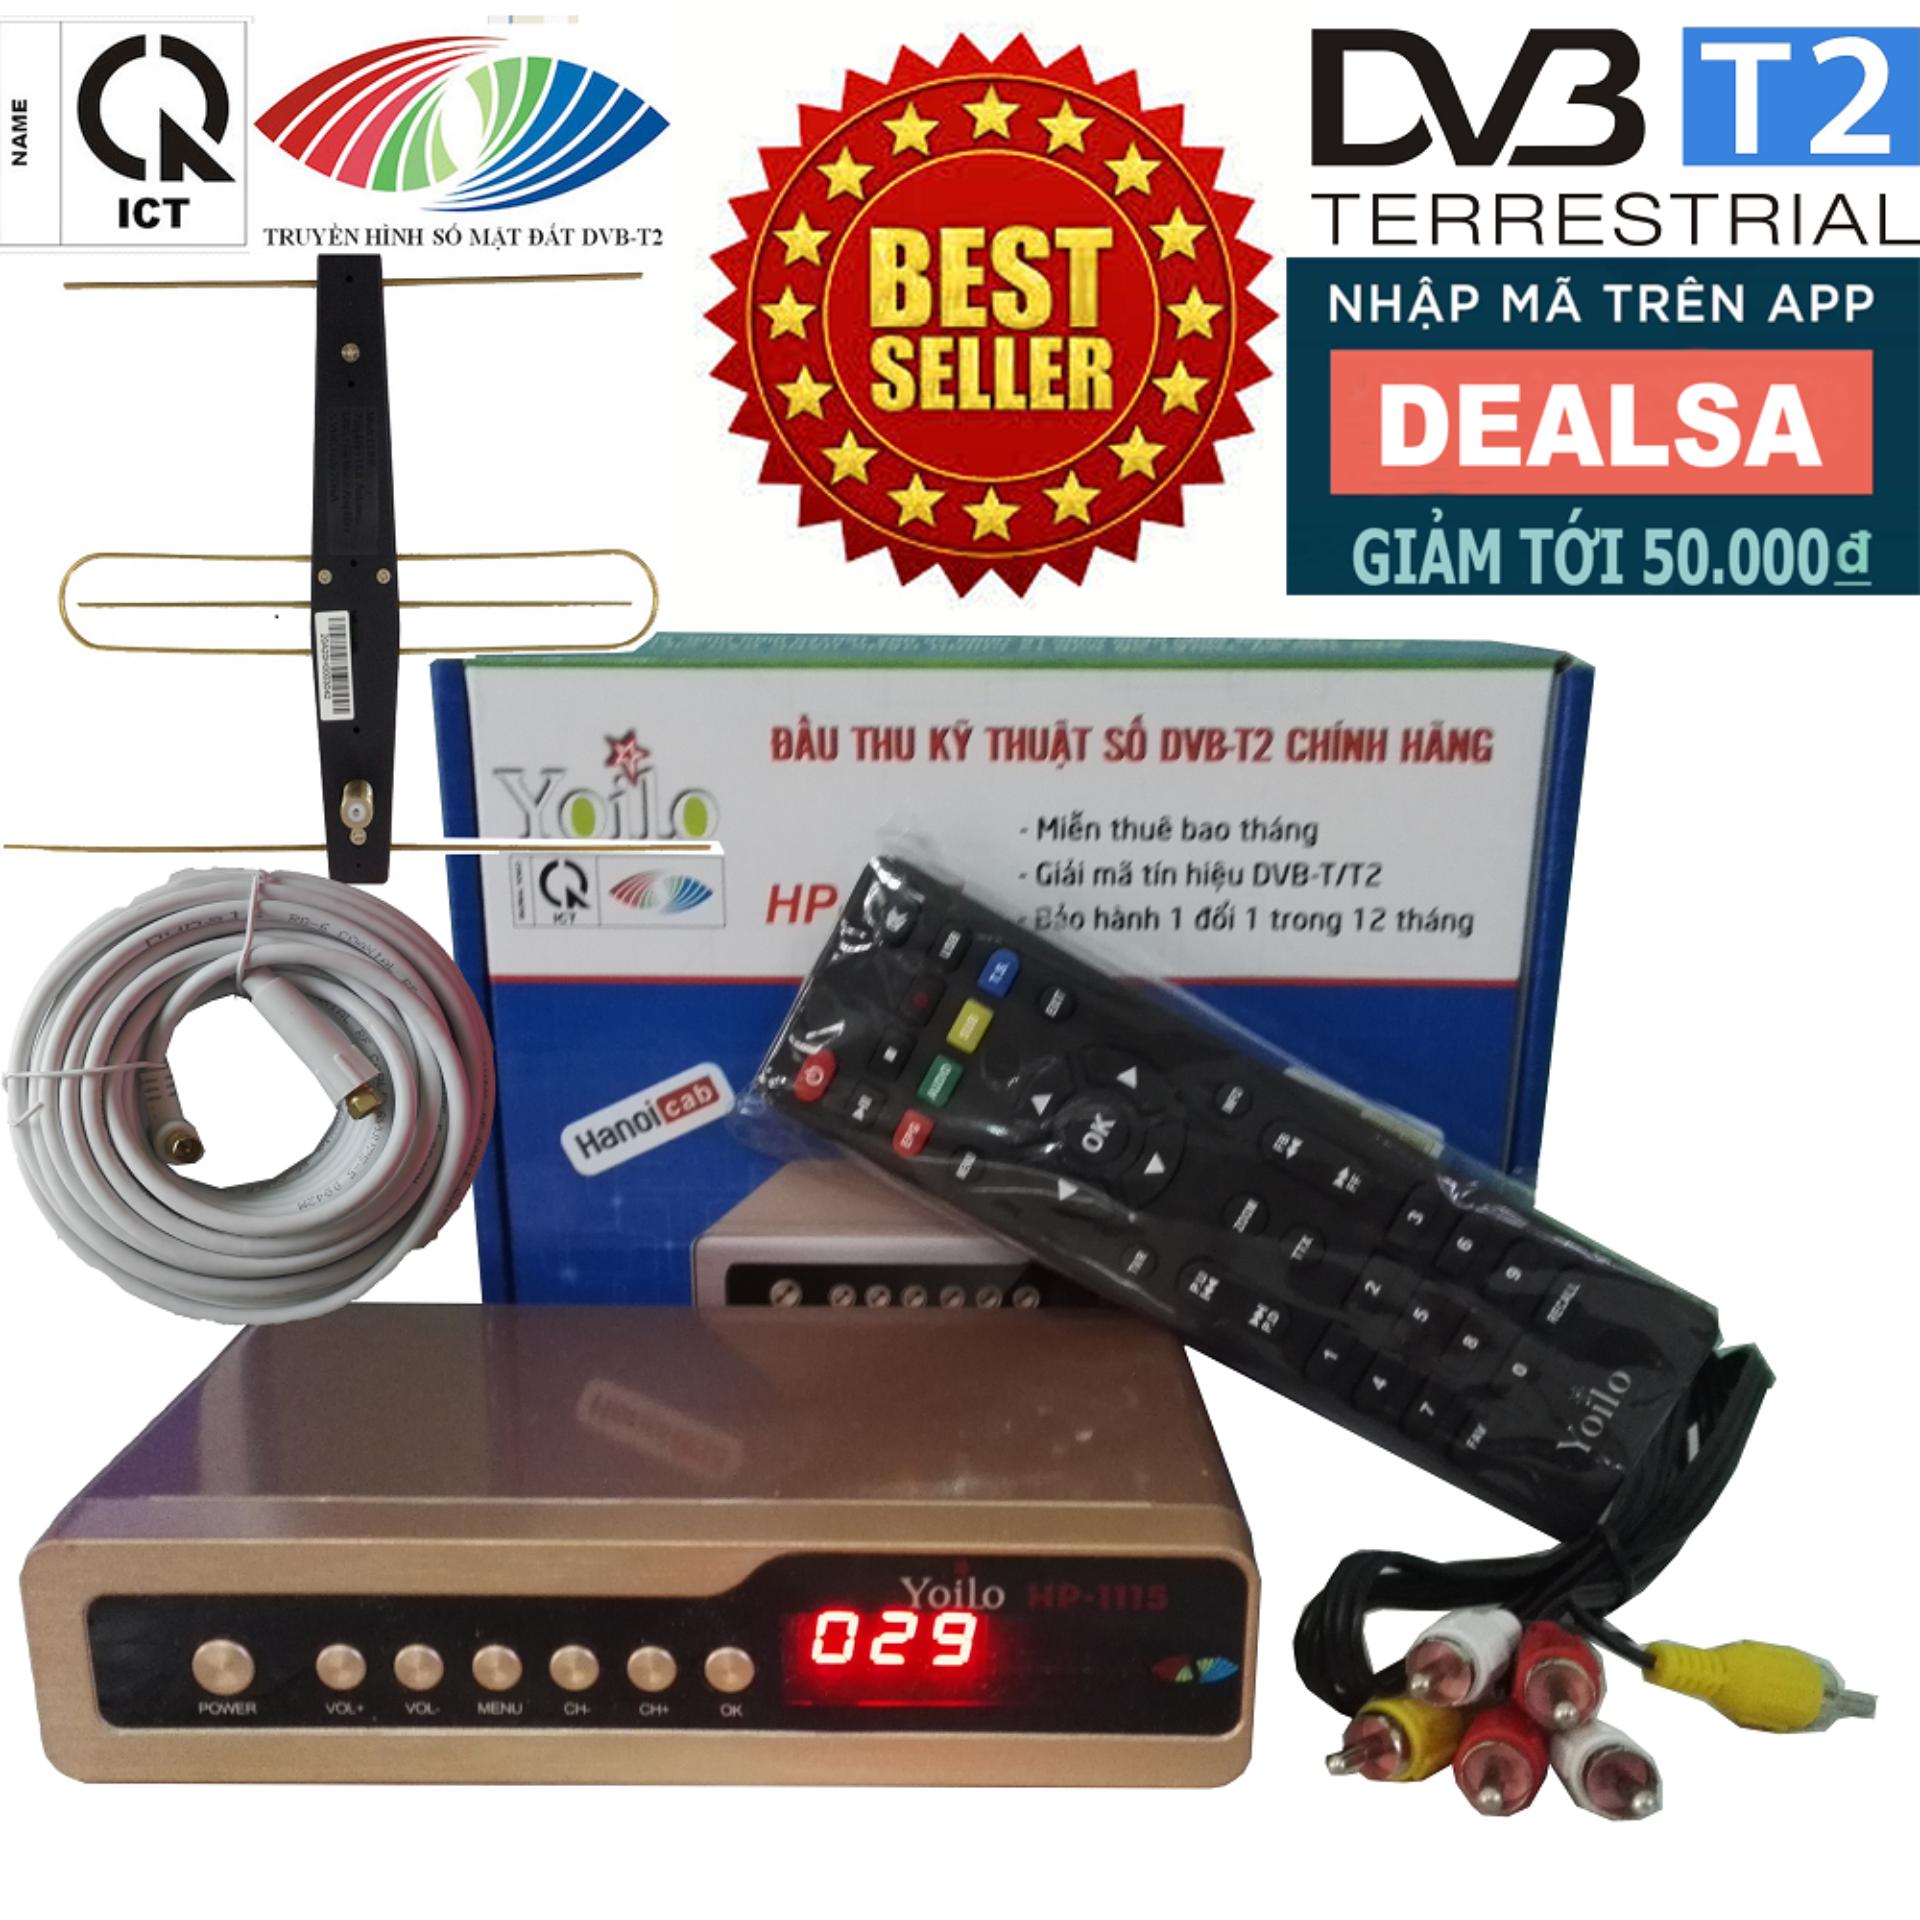 Đầu thu kỹ thuật số SET TOP BOX DVB-T2/HP-1115 kèm Bộ Anten Có Mạch Khuếch Đại, Dây Cáp và Jack...